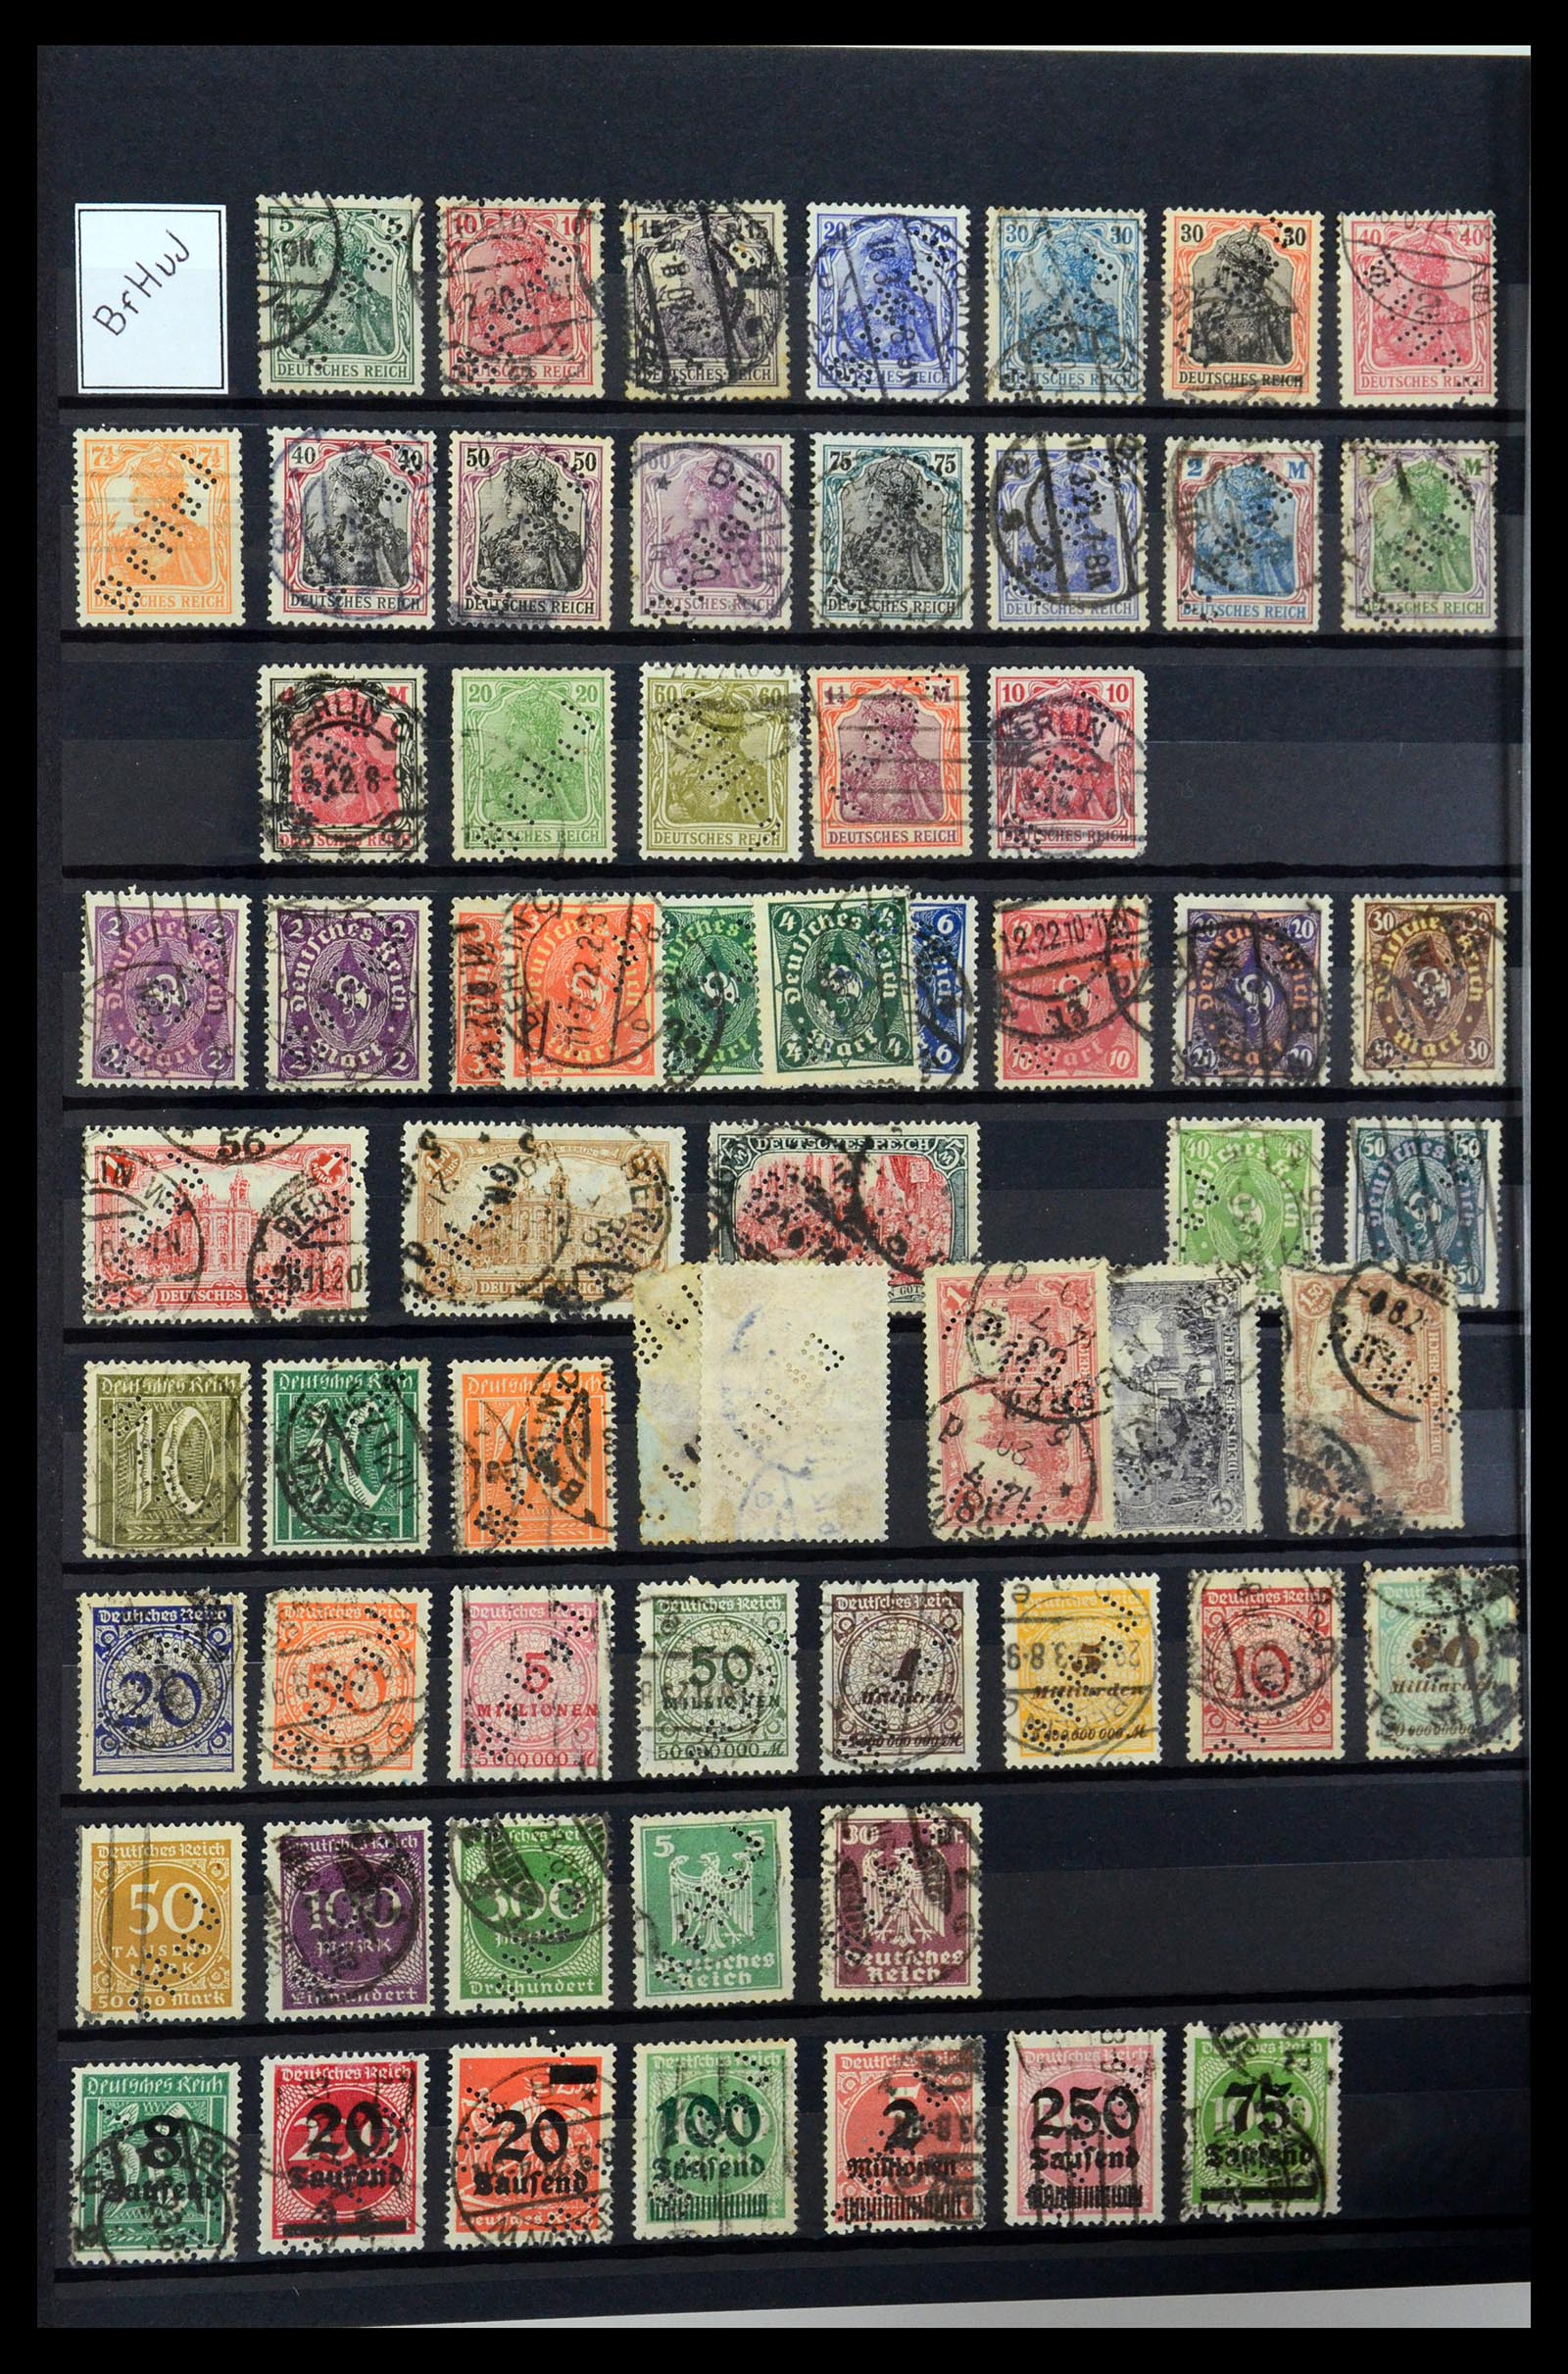 36405 038 - Stamp collection 36405 German Reich perfins 1880-1945.